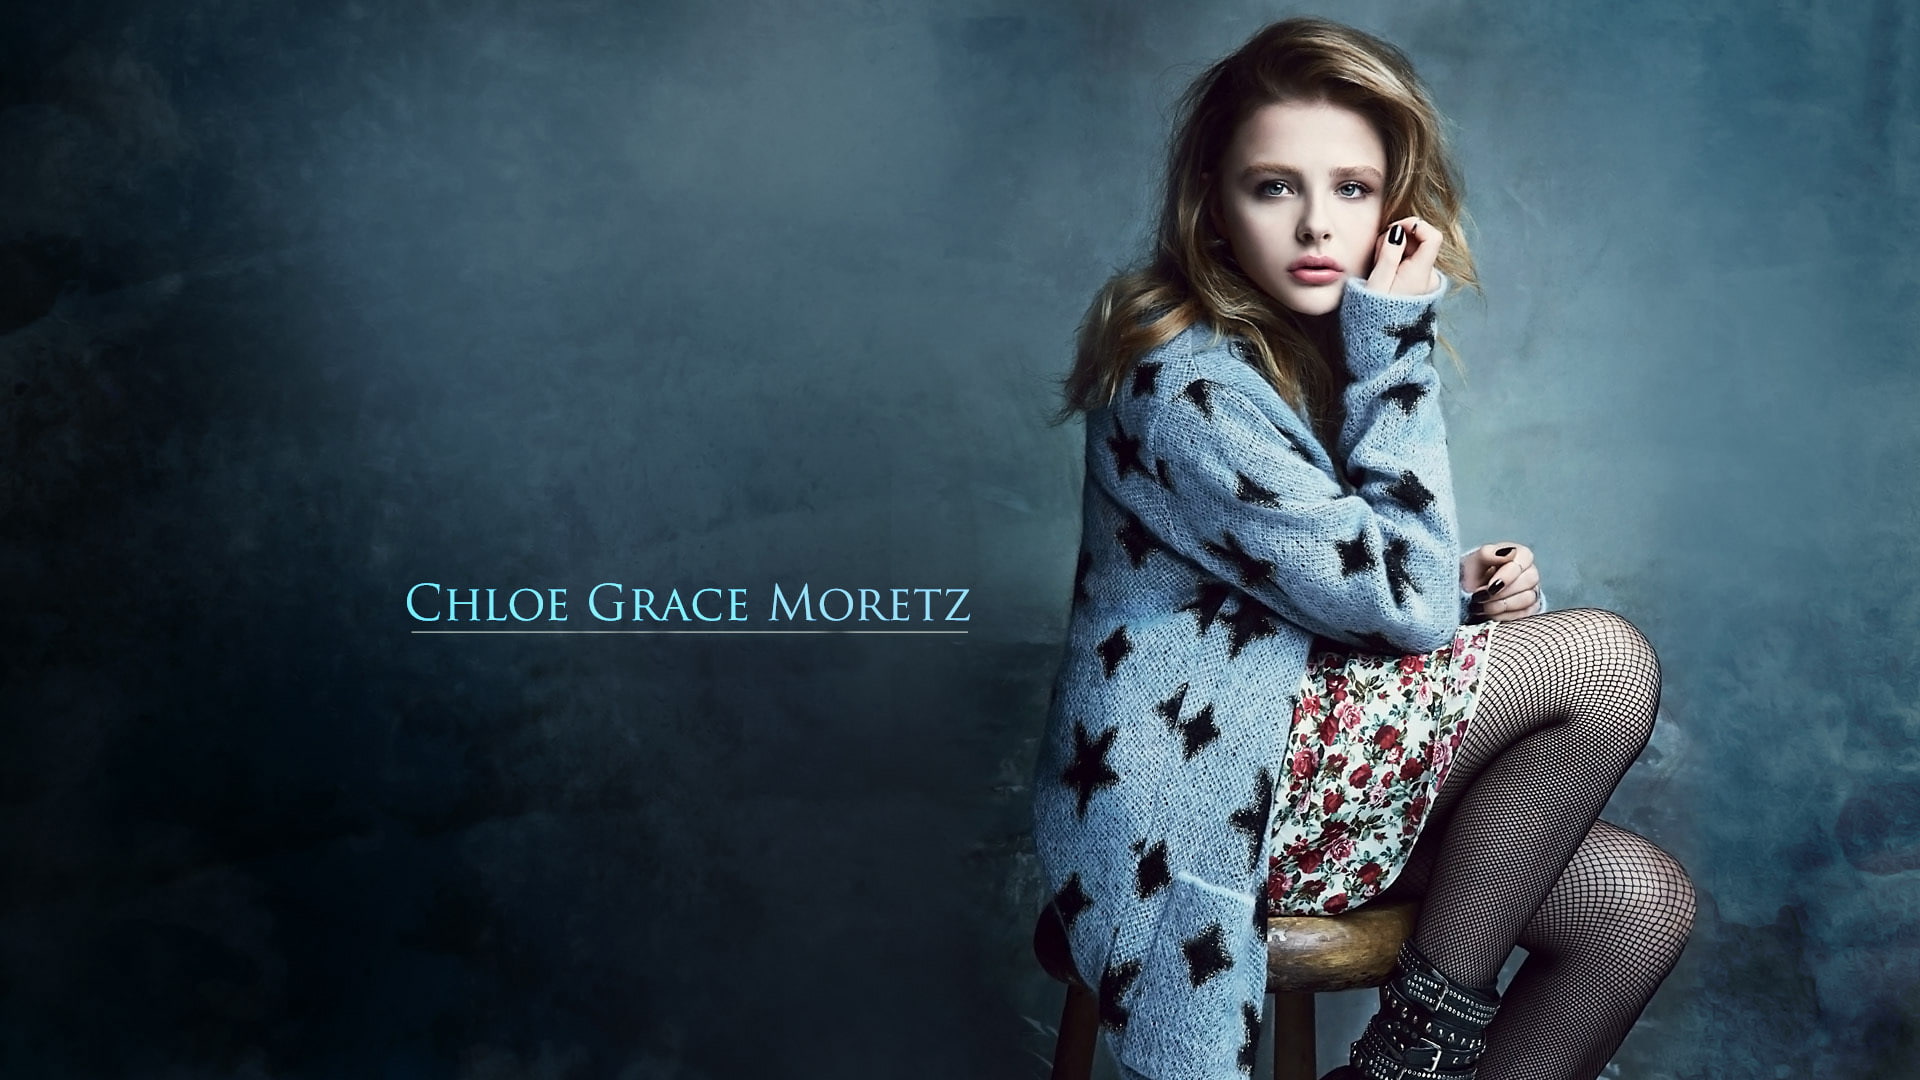 Chloe Grace Moretz, Girl, Actress, Chloë Grace Moretz, portrait